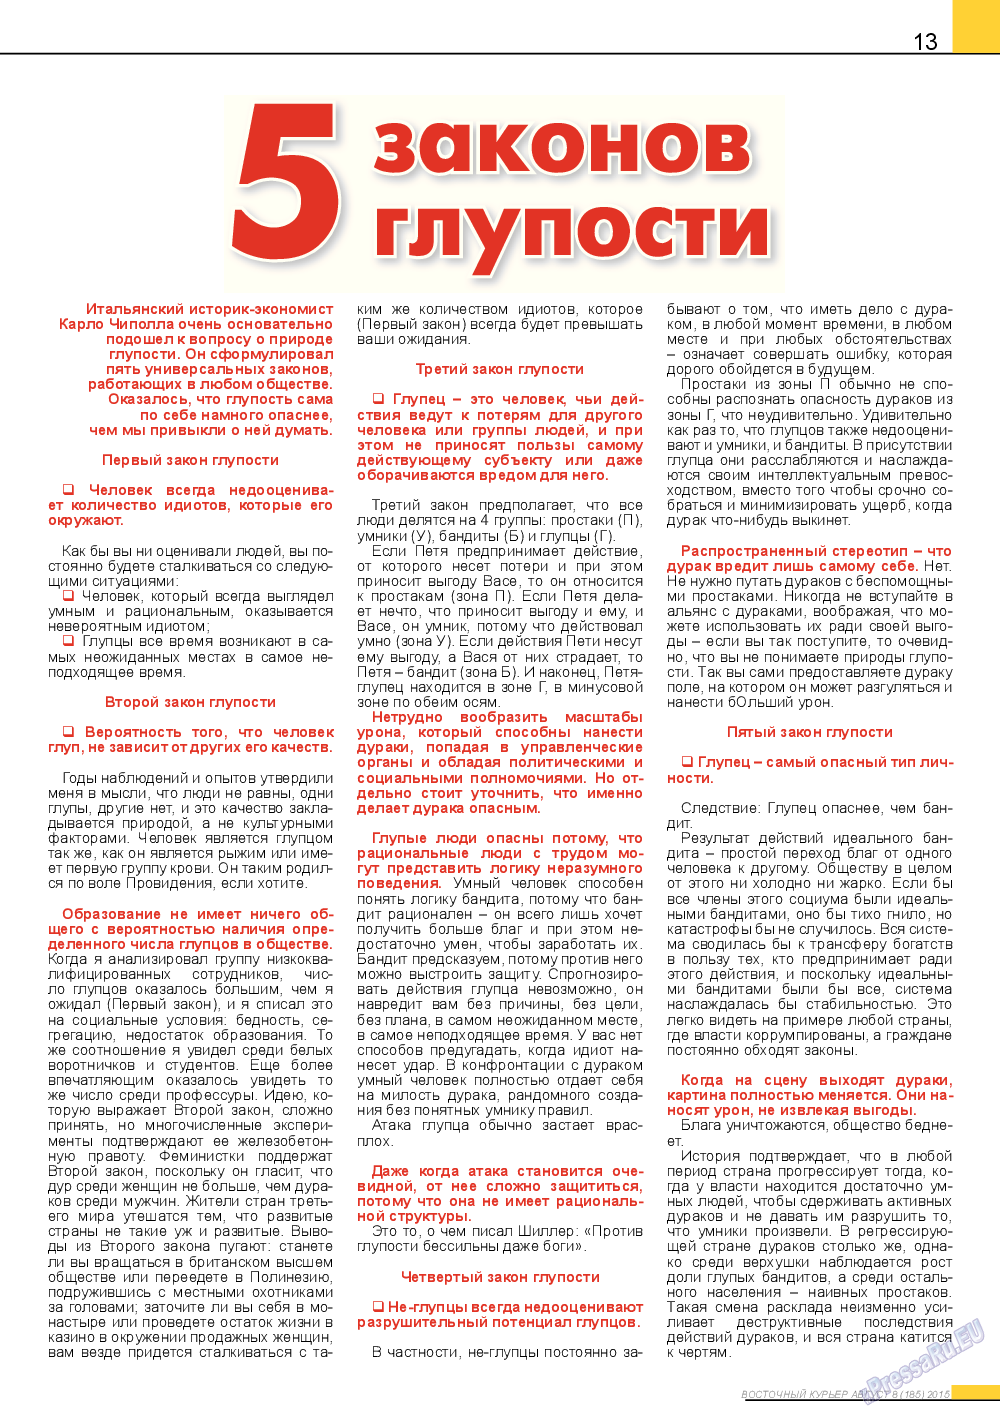 Восточный курьер, журнал. 2015 №8 стр.13